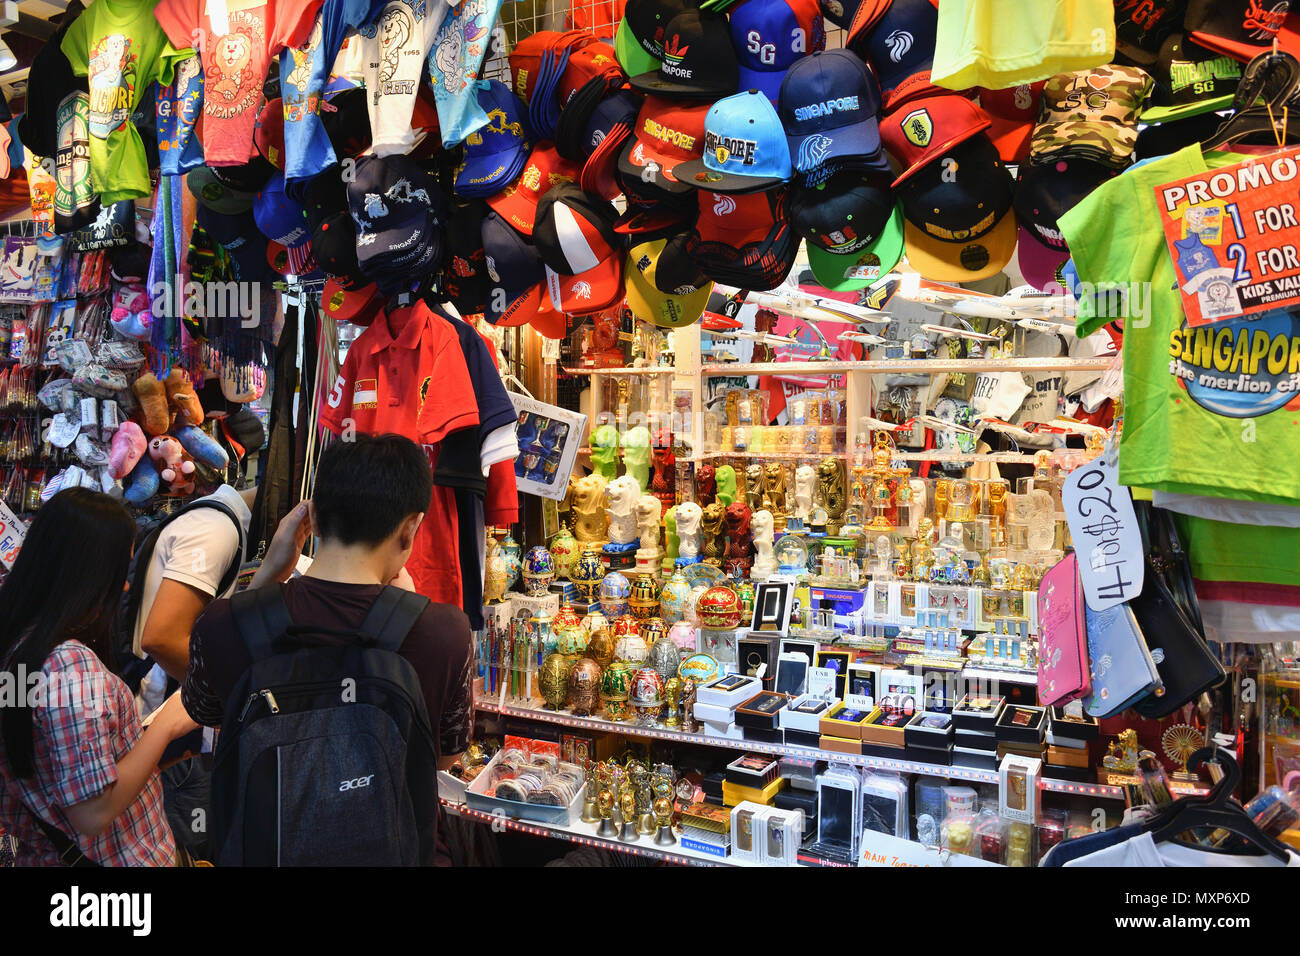 Singapour Bugis Street. Une boutique vend des souvenirs touristiques dans ce budget-friendly mall, plus particulièrement sur le thème des sourvenirs du Merlion. Banque D'Images